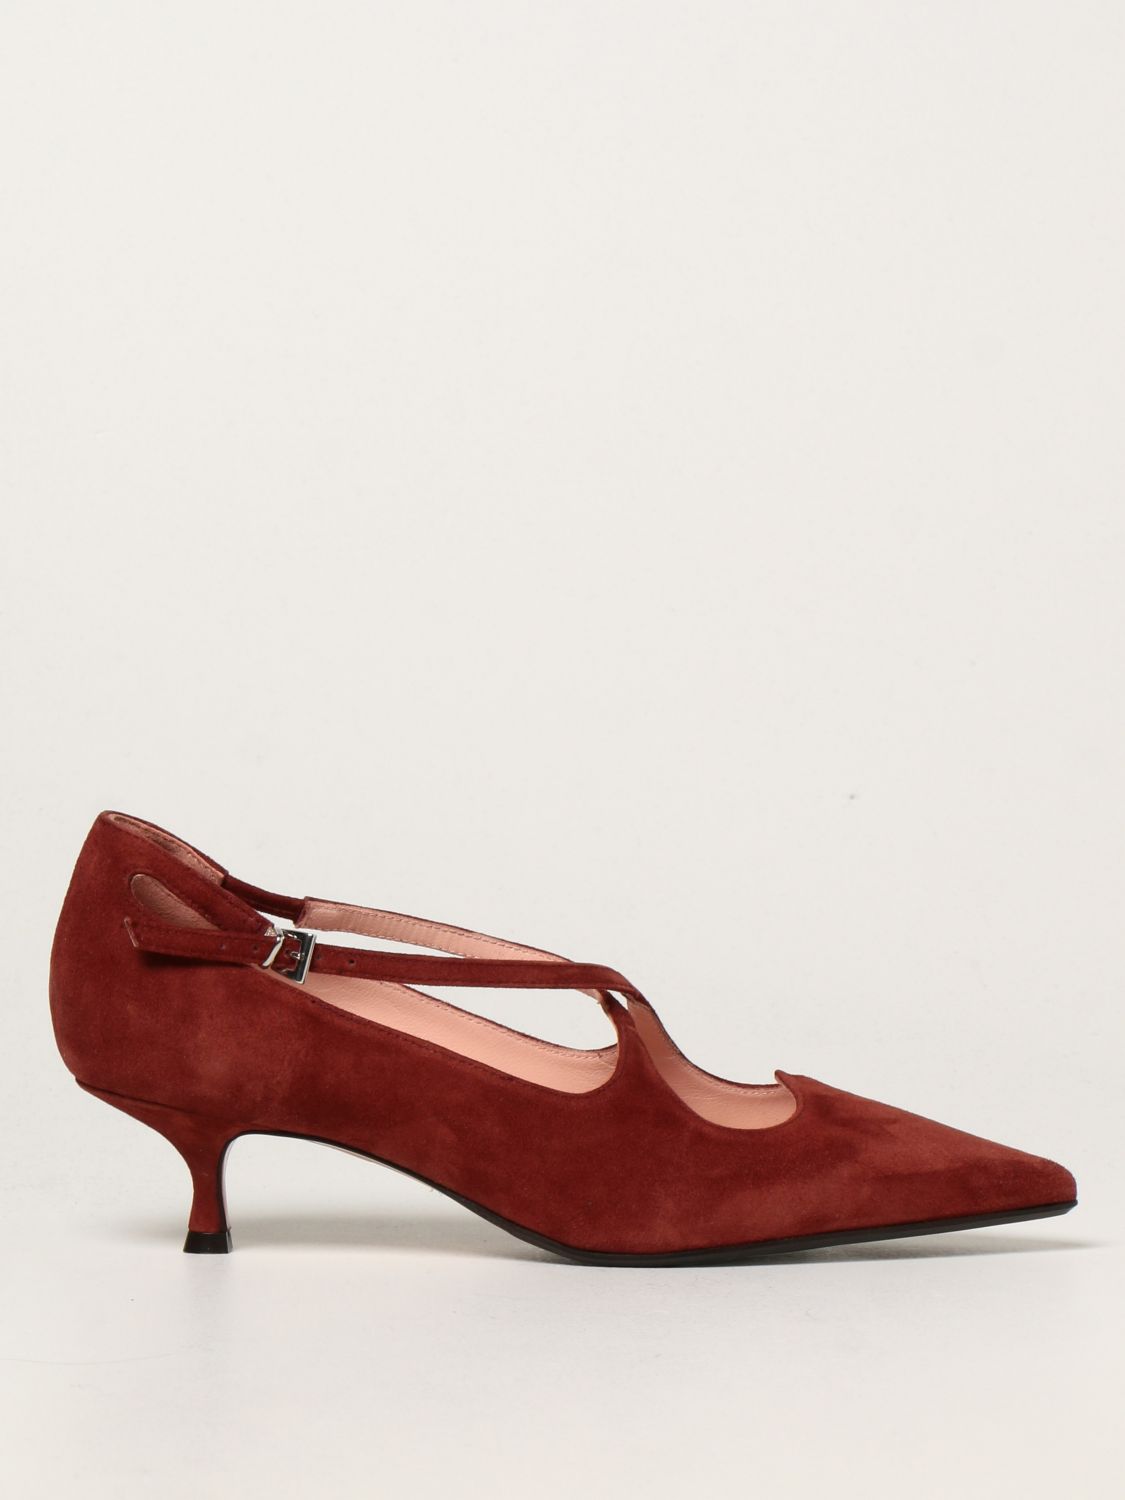 Escarpins Anna F.: Chaussures femme Anna F. marron 1